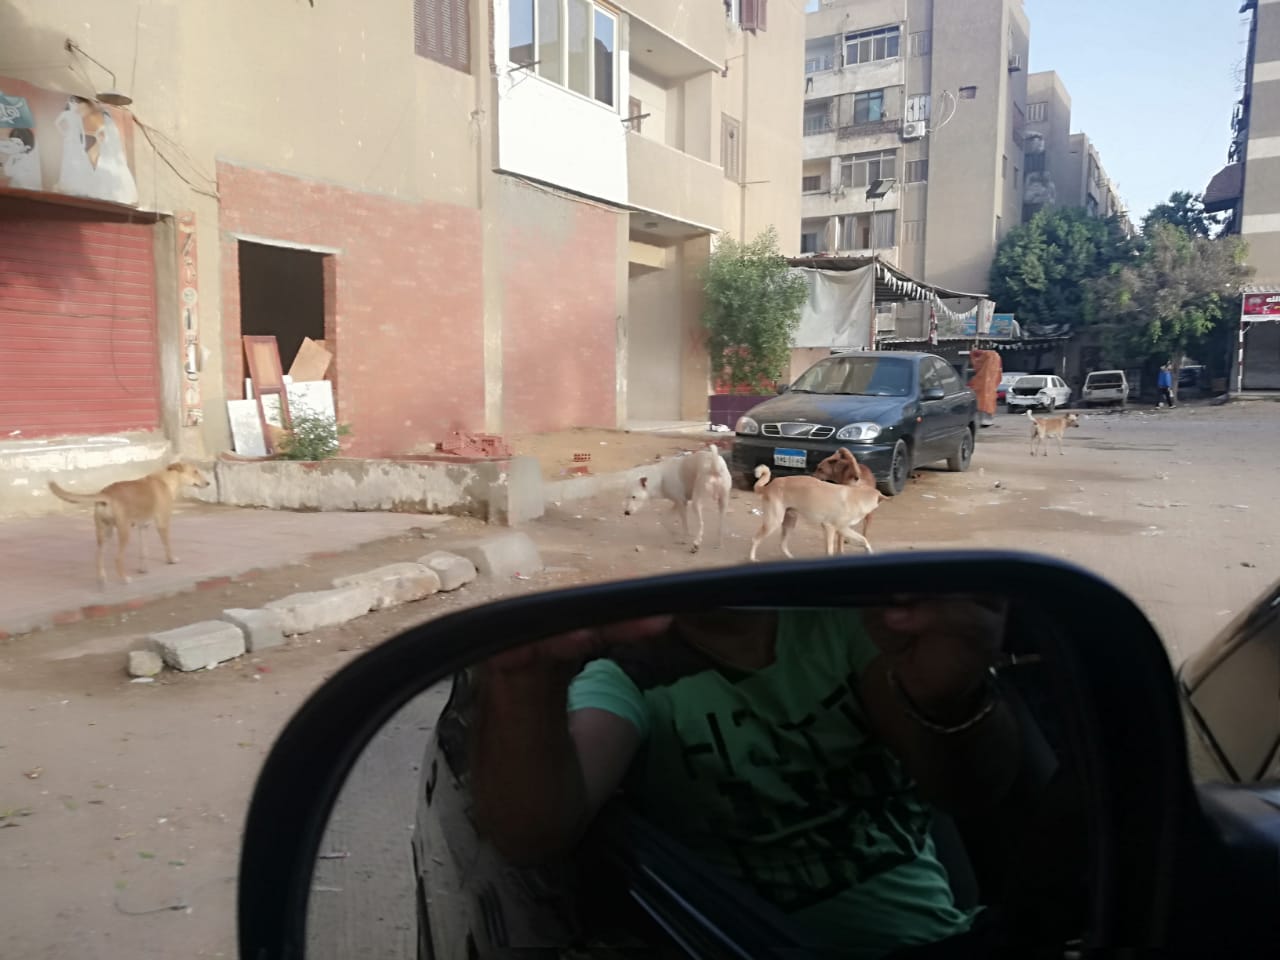  انتشار الكلاب الضالة بشوارع صقر قريش فى مدينة نصر  (1)